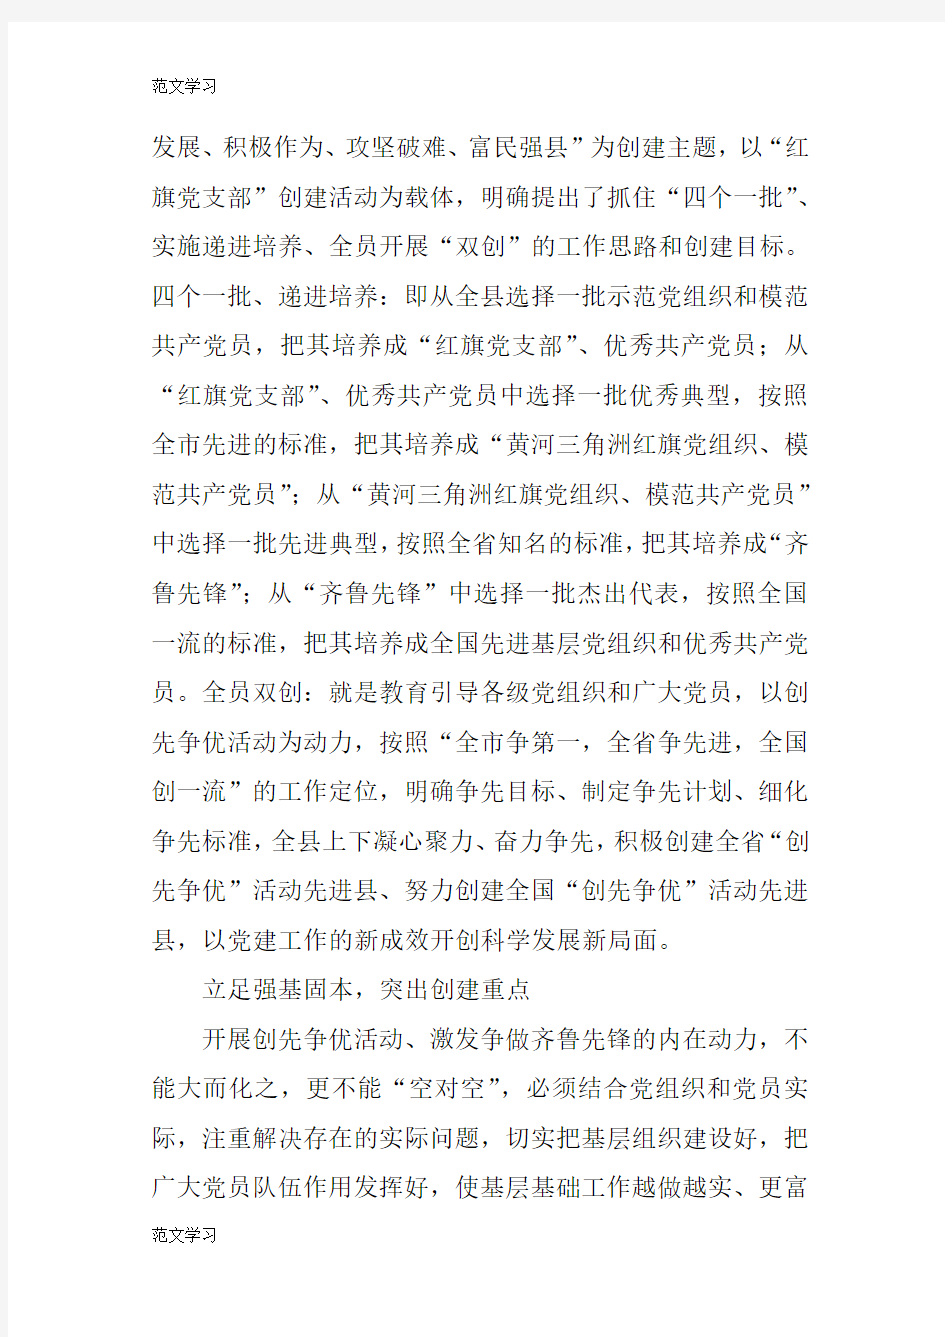 【范文学习】“红旗党支部”创建活动后汇报总结报告材料